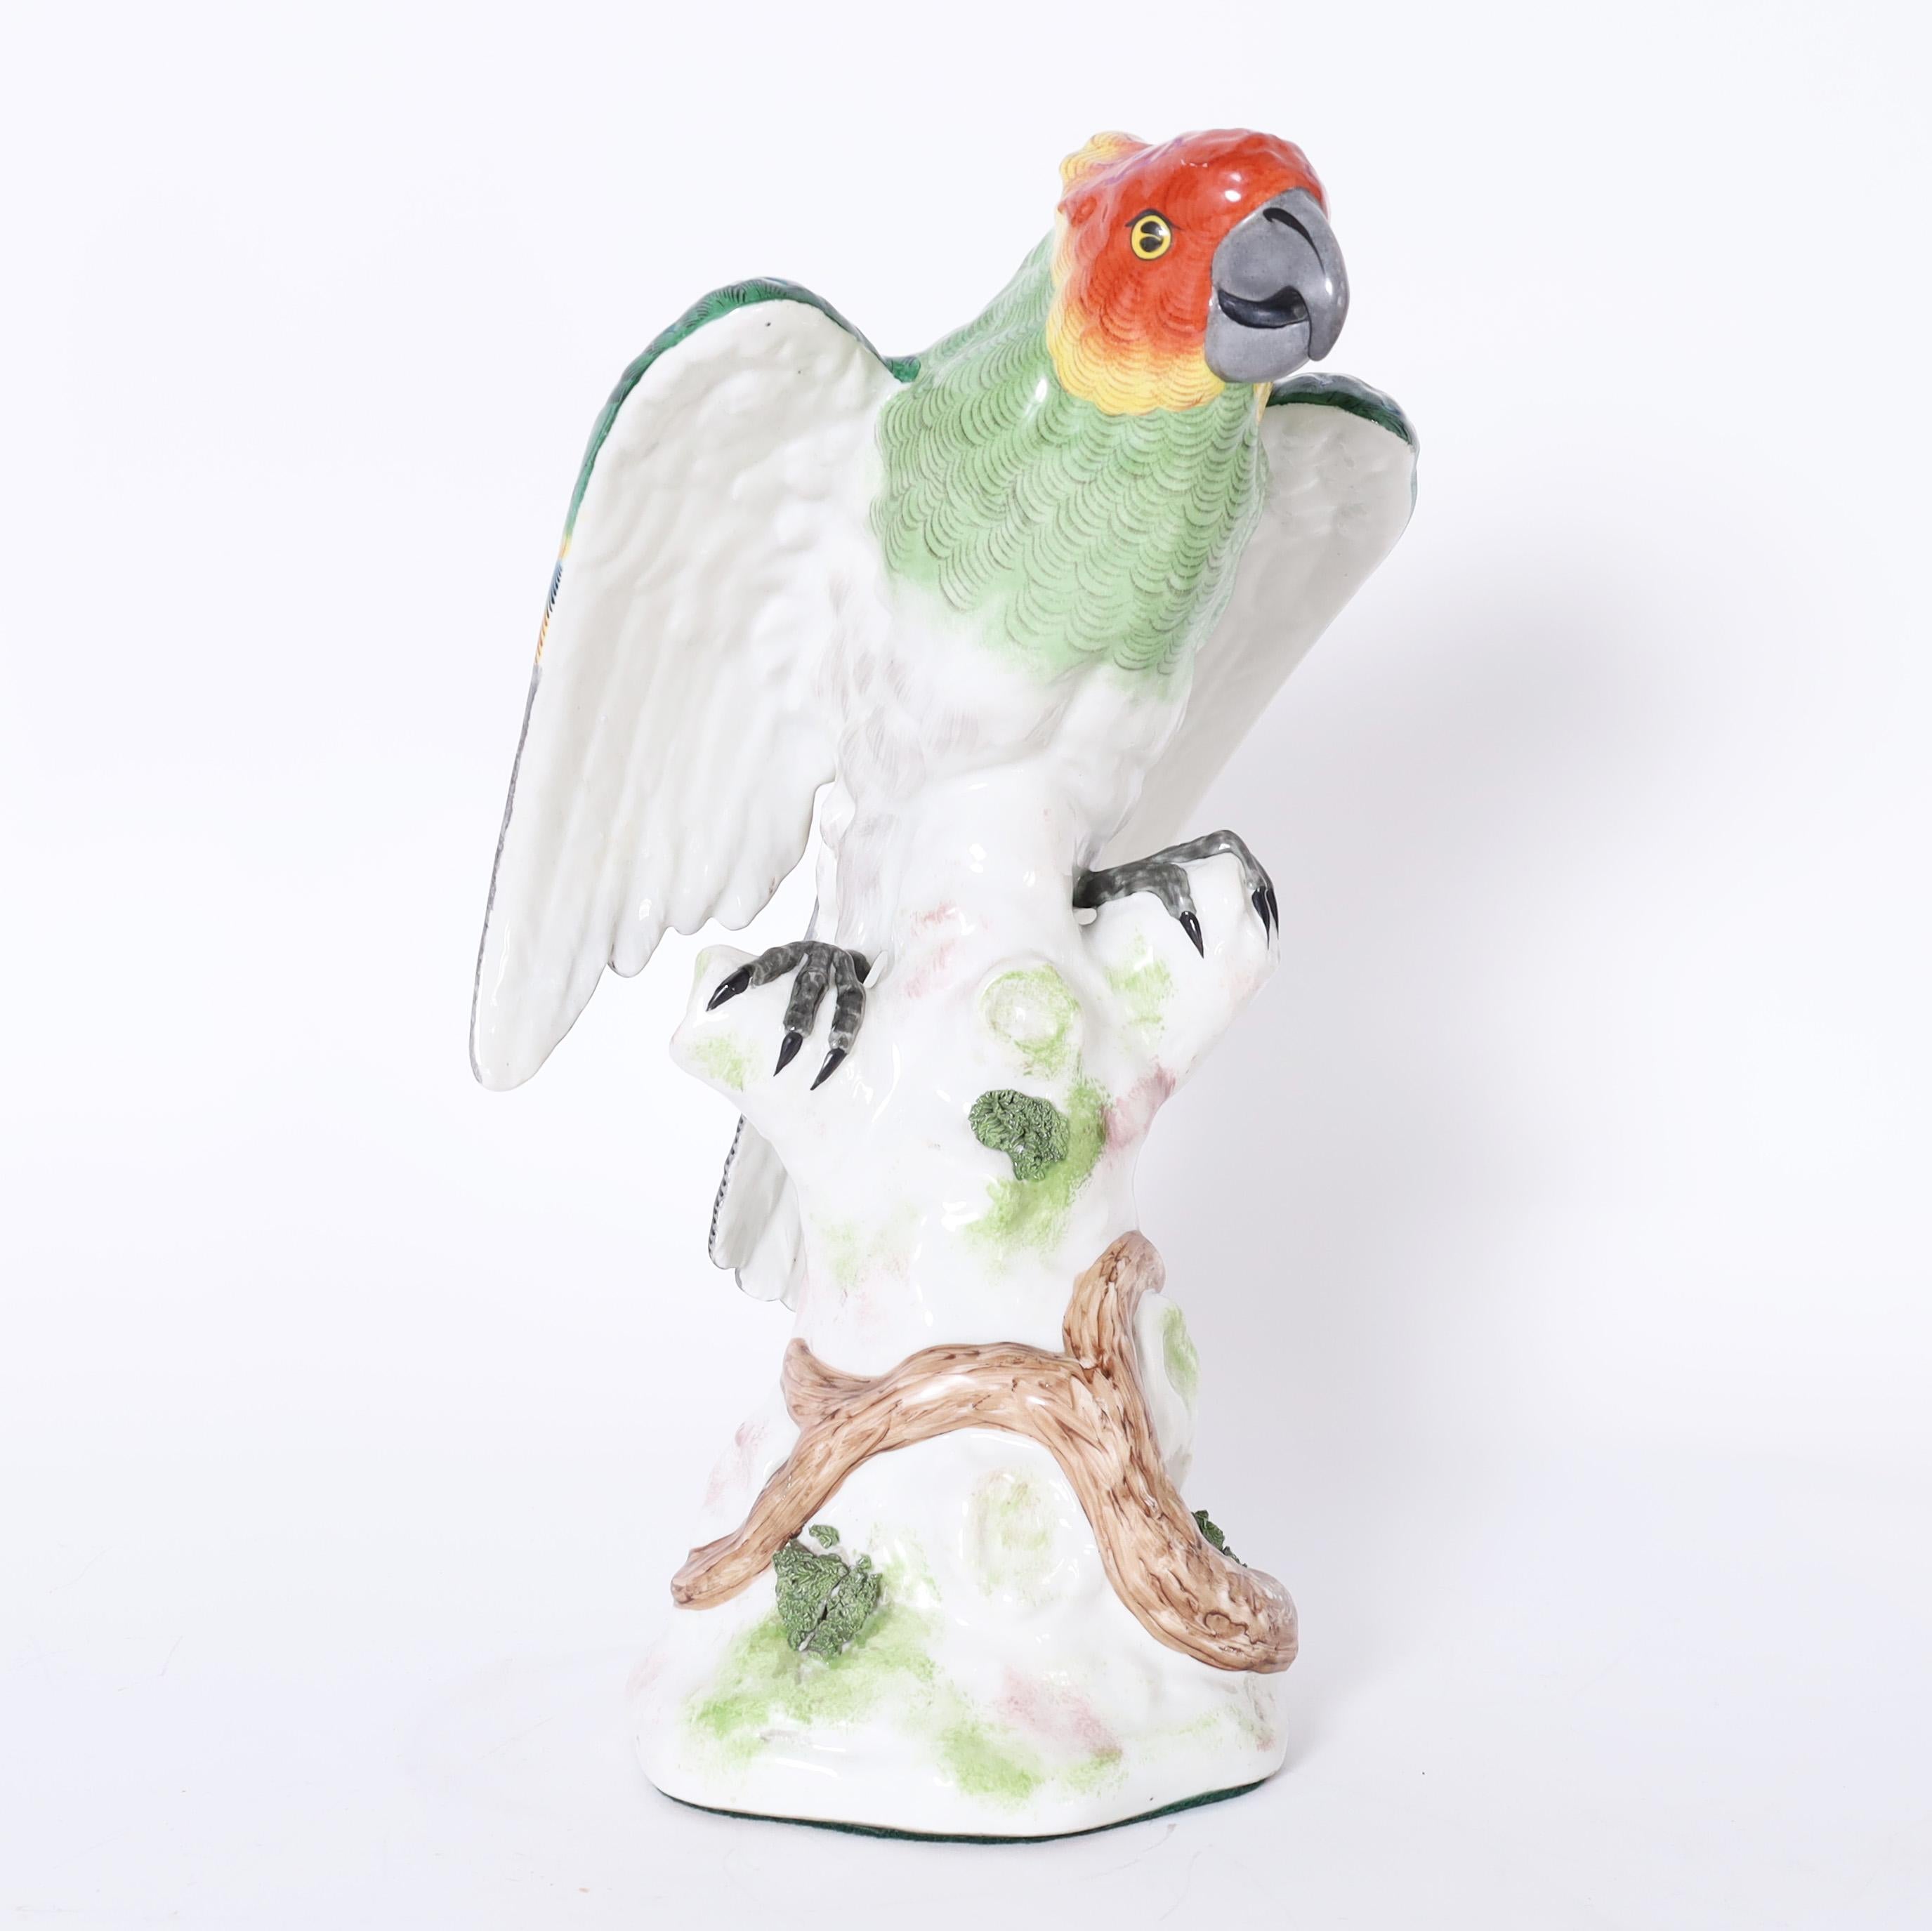 Charmanter lebensgroßer Papagei aus Porzellan, handbemalt in lebhaften tropischen Farben, glasiert und auf einem Baumstamm sitzend. Signiert mit gekreuzten Pfeilen auf der Rückseite.